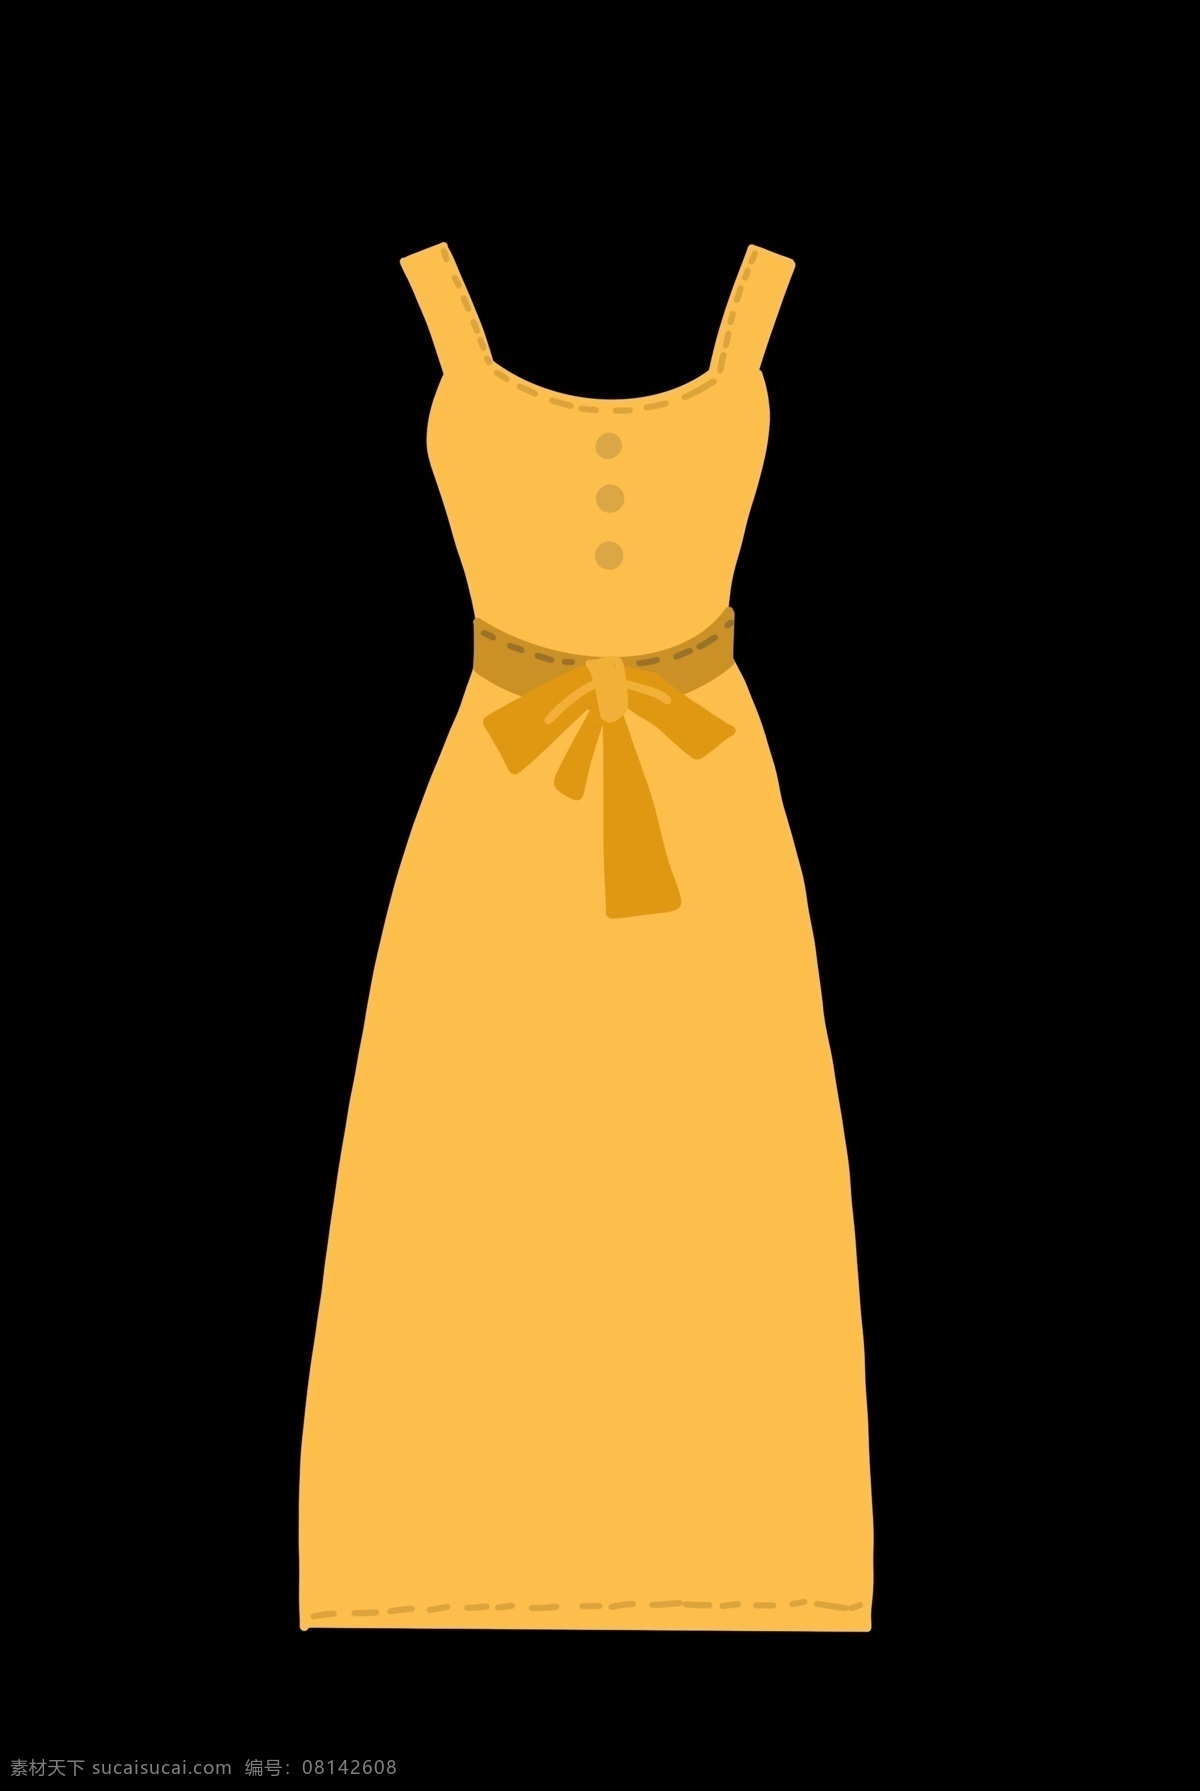 黄色 蝴蝶结 衣物 衣服